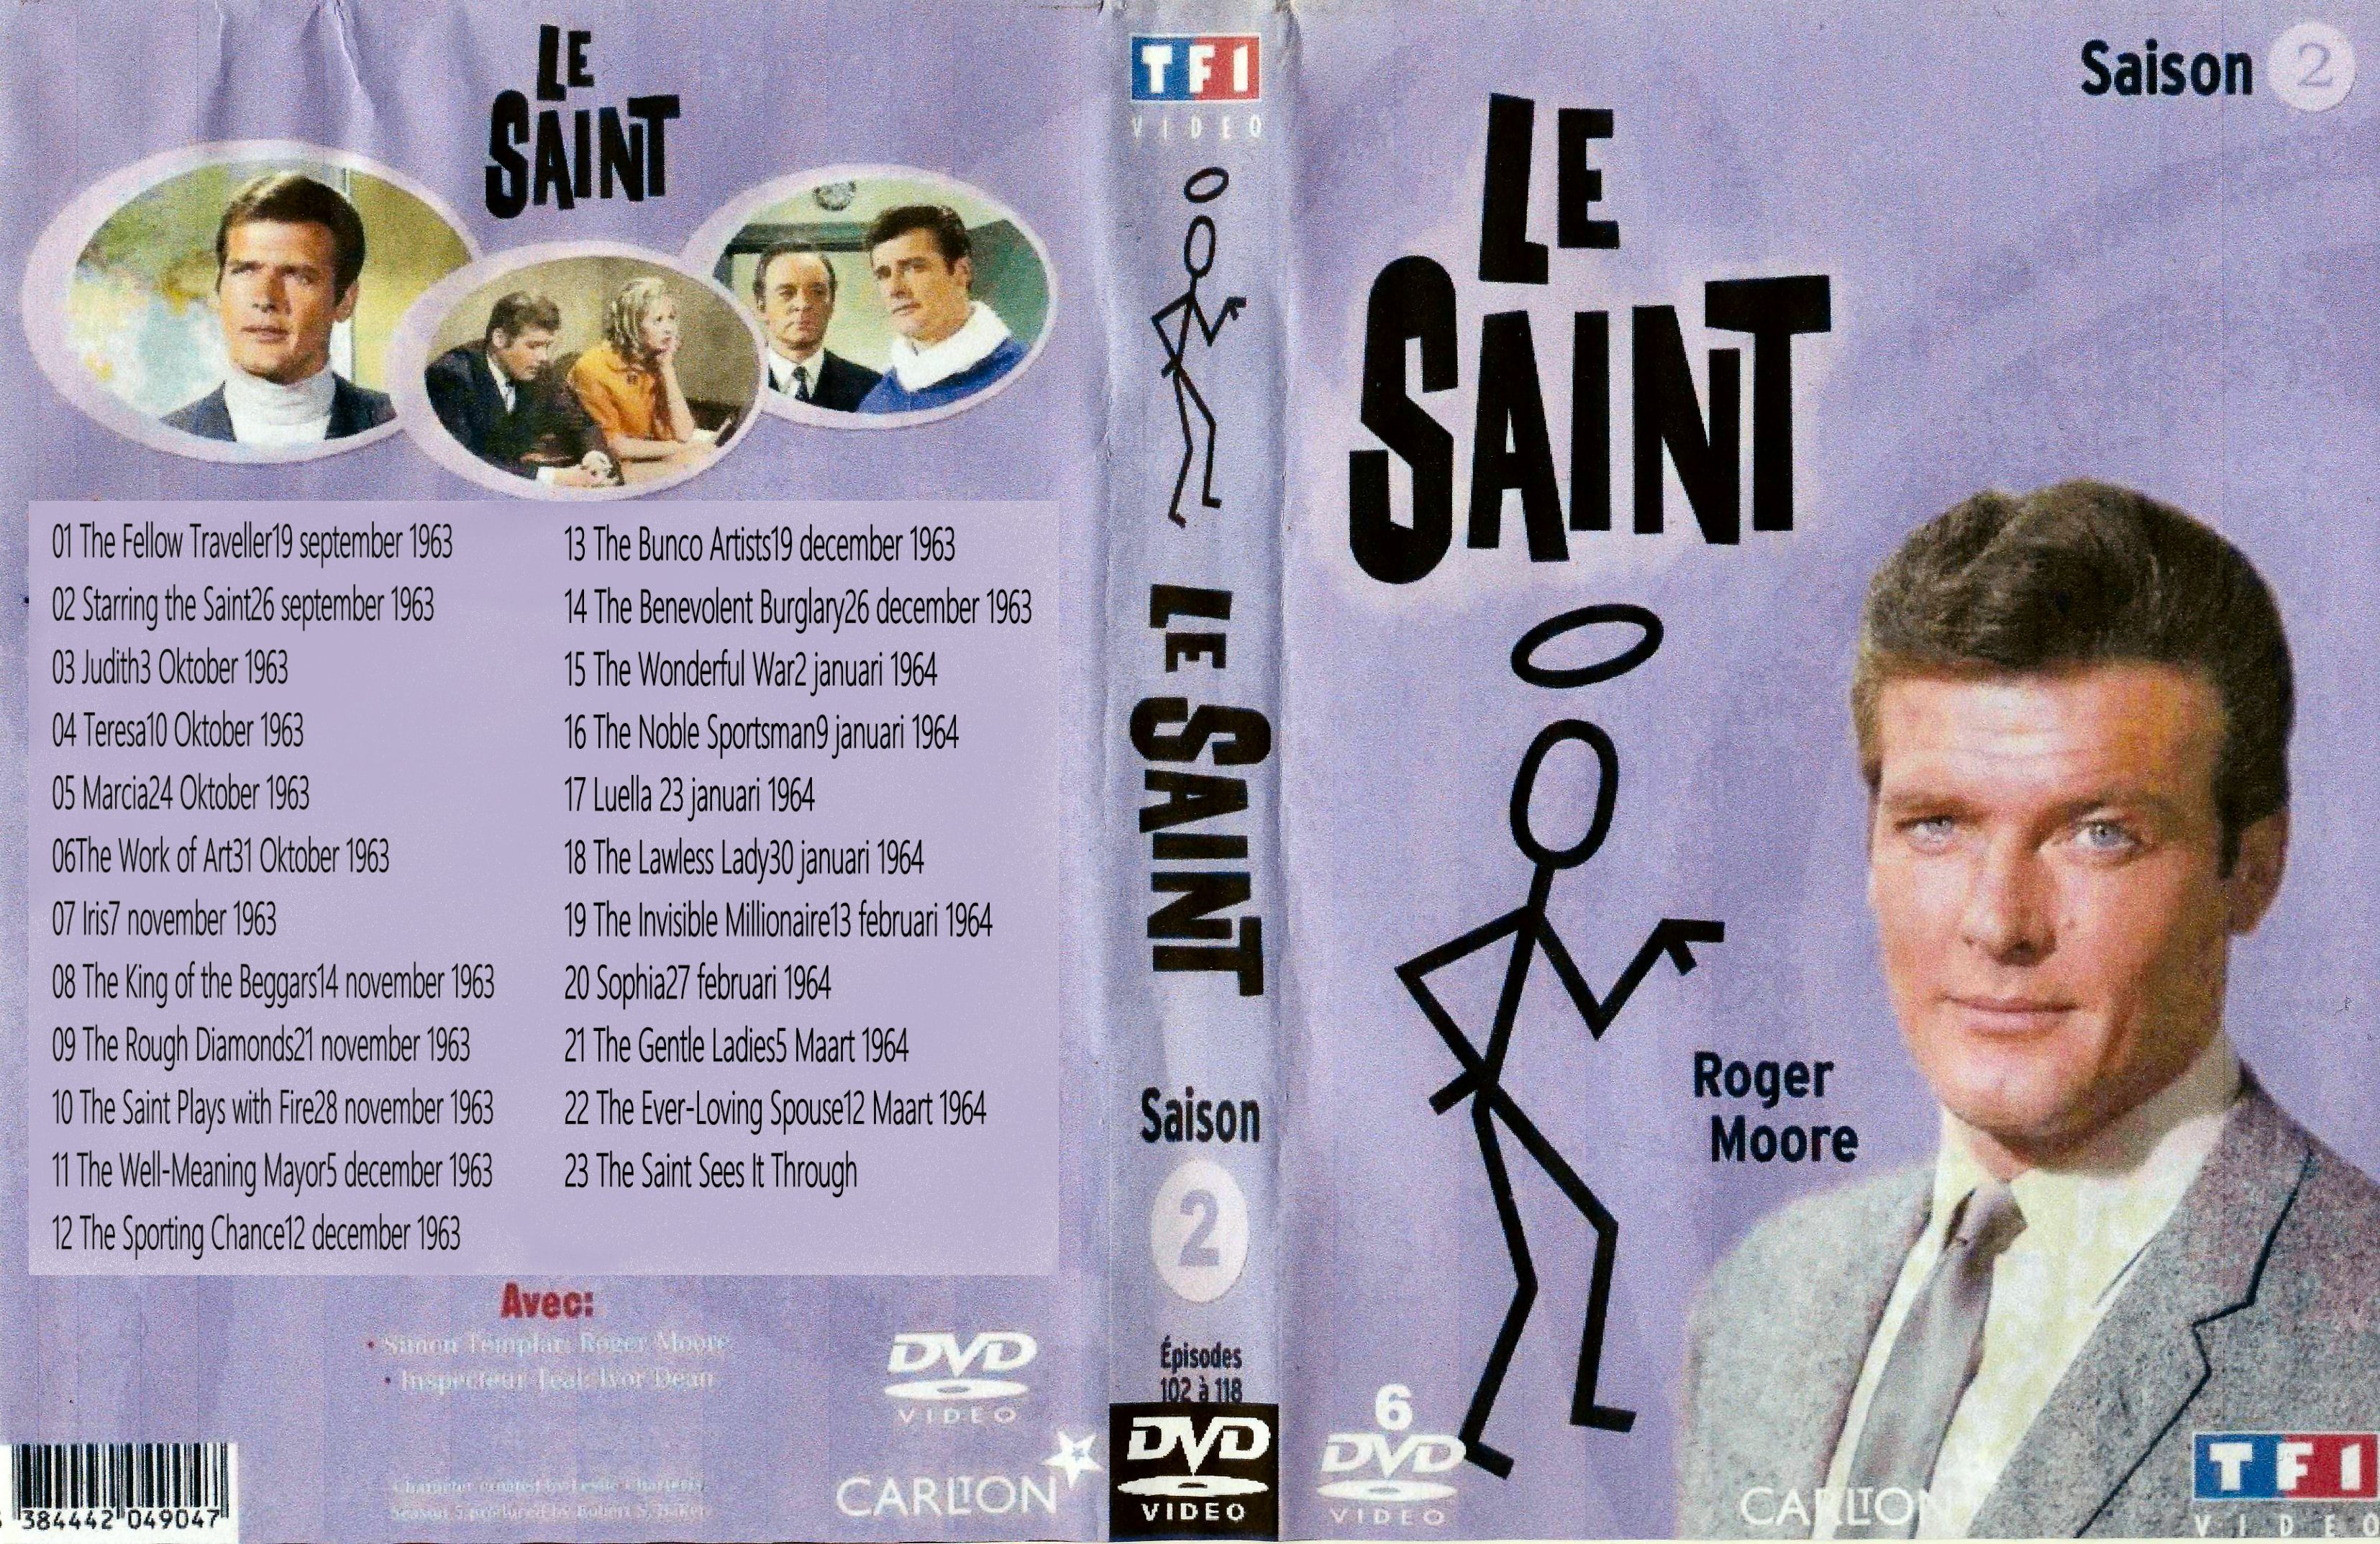 The Saint Seizoen 2 ( 1963 ) DvD 8 De laatste